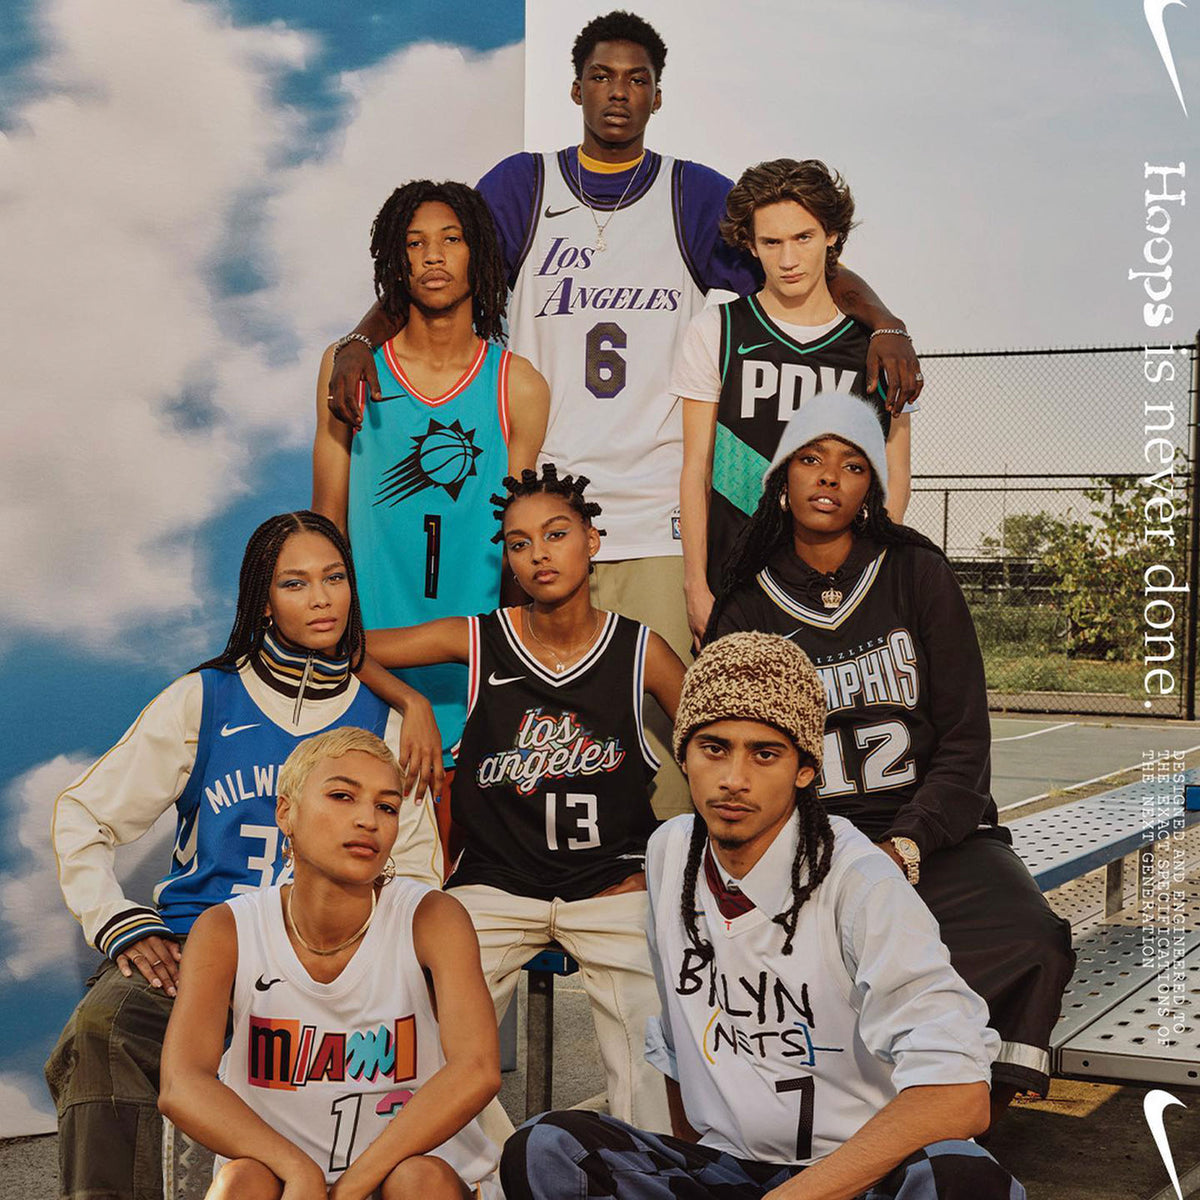 Lids Kevin Durant Brooklyn Nets Nike Infant Swingman Jersey